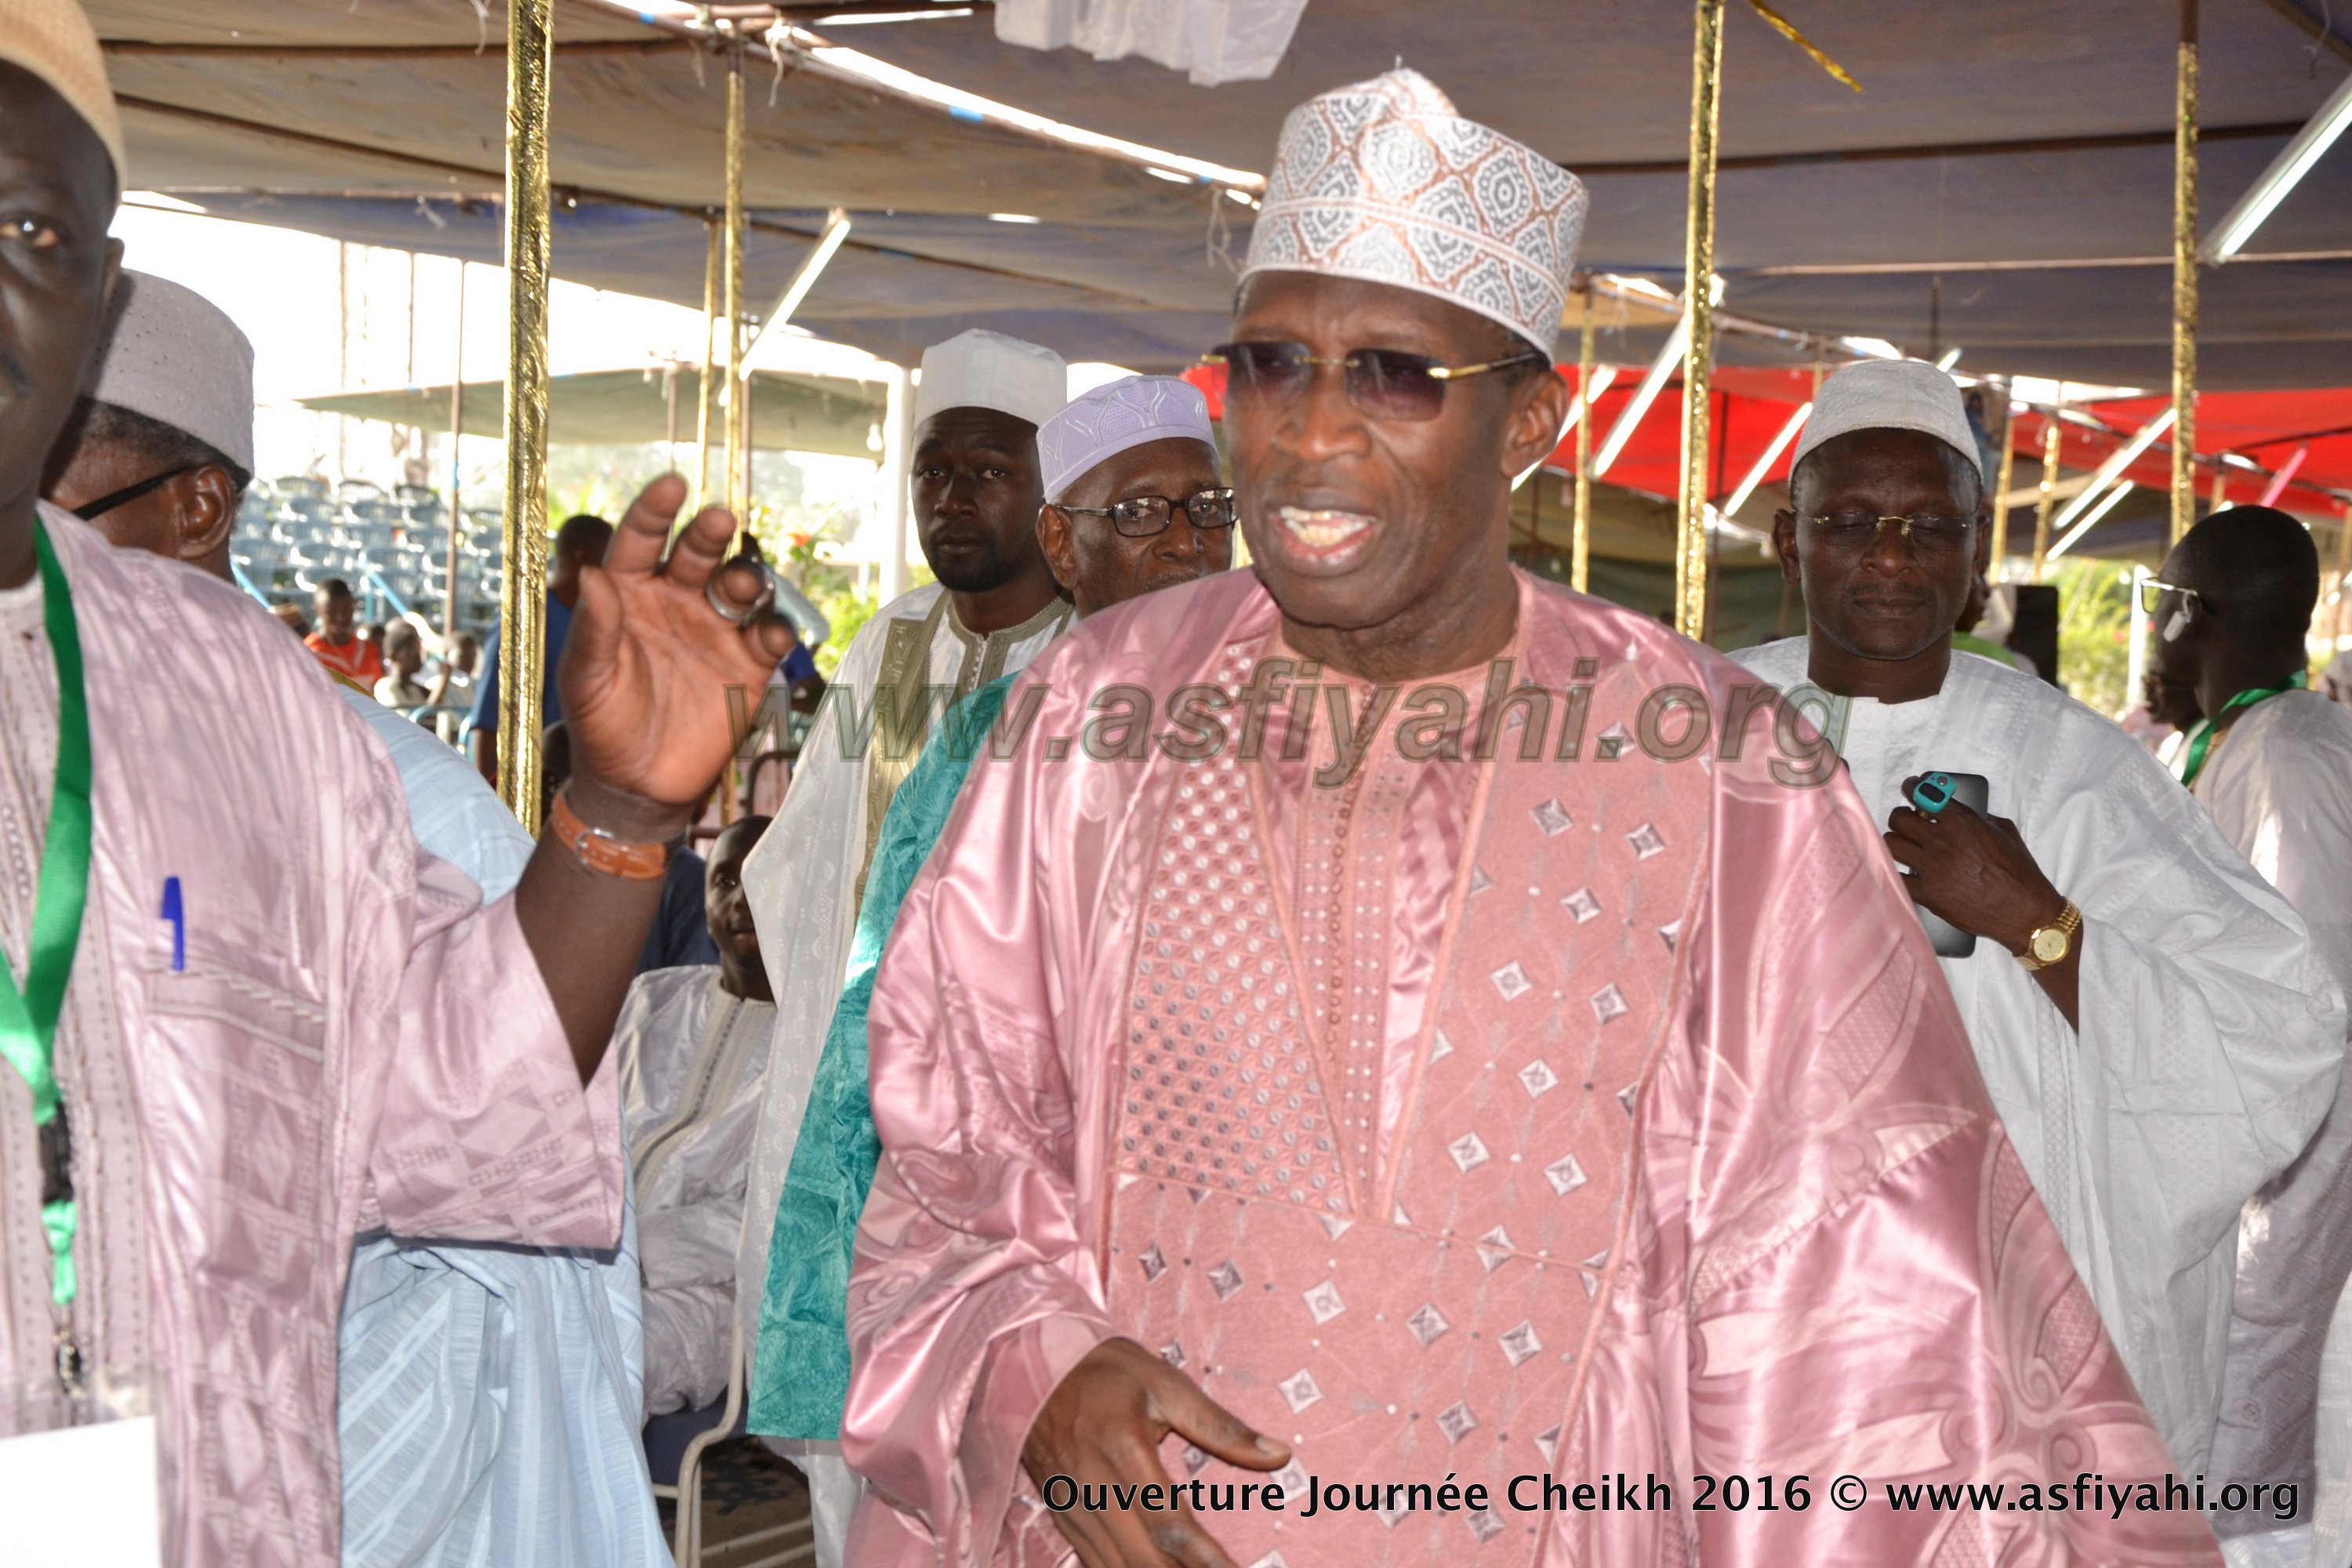 PHOTOS - Les Images de l'Ouverture Officielle des Journées Cheikh Ahmed Tijani Cherif (rta), Edition 2016, tenue ce Samedi 12 Novembre 2016 à la Grande Mosquée de Dakar